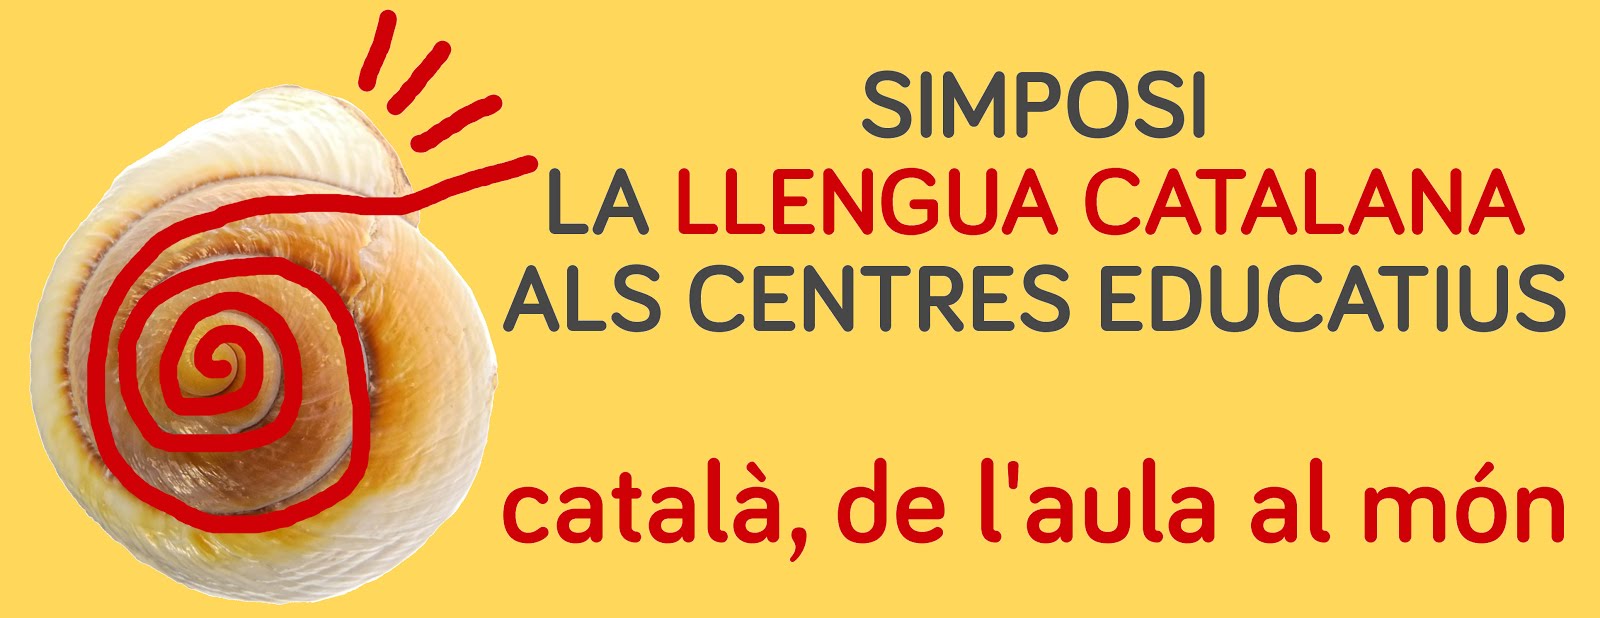 SIMPOSI DE LA LLENGUA CATALANA ALS CENTRES EDUCATIUS el català, de l'aula al món